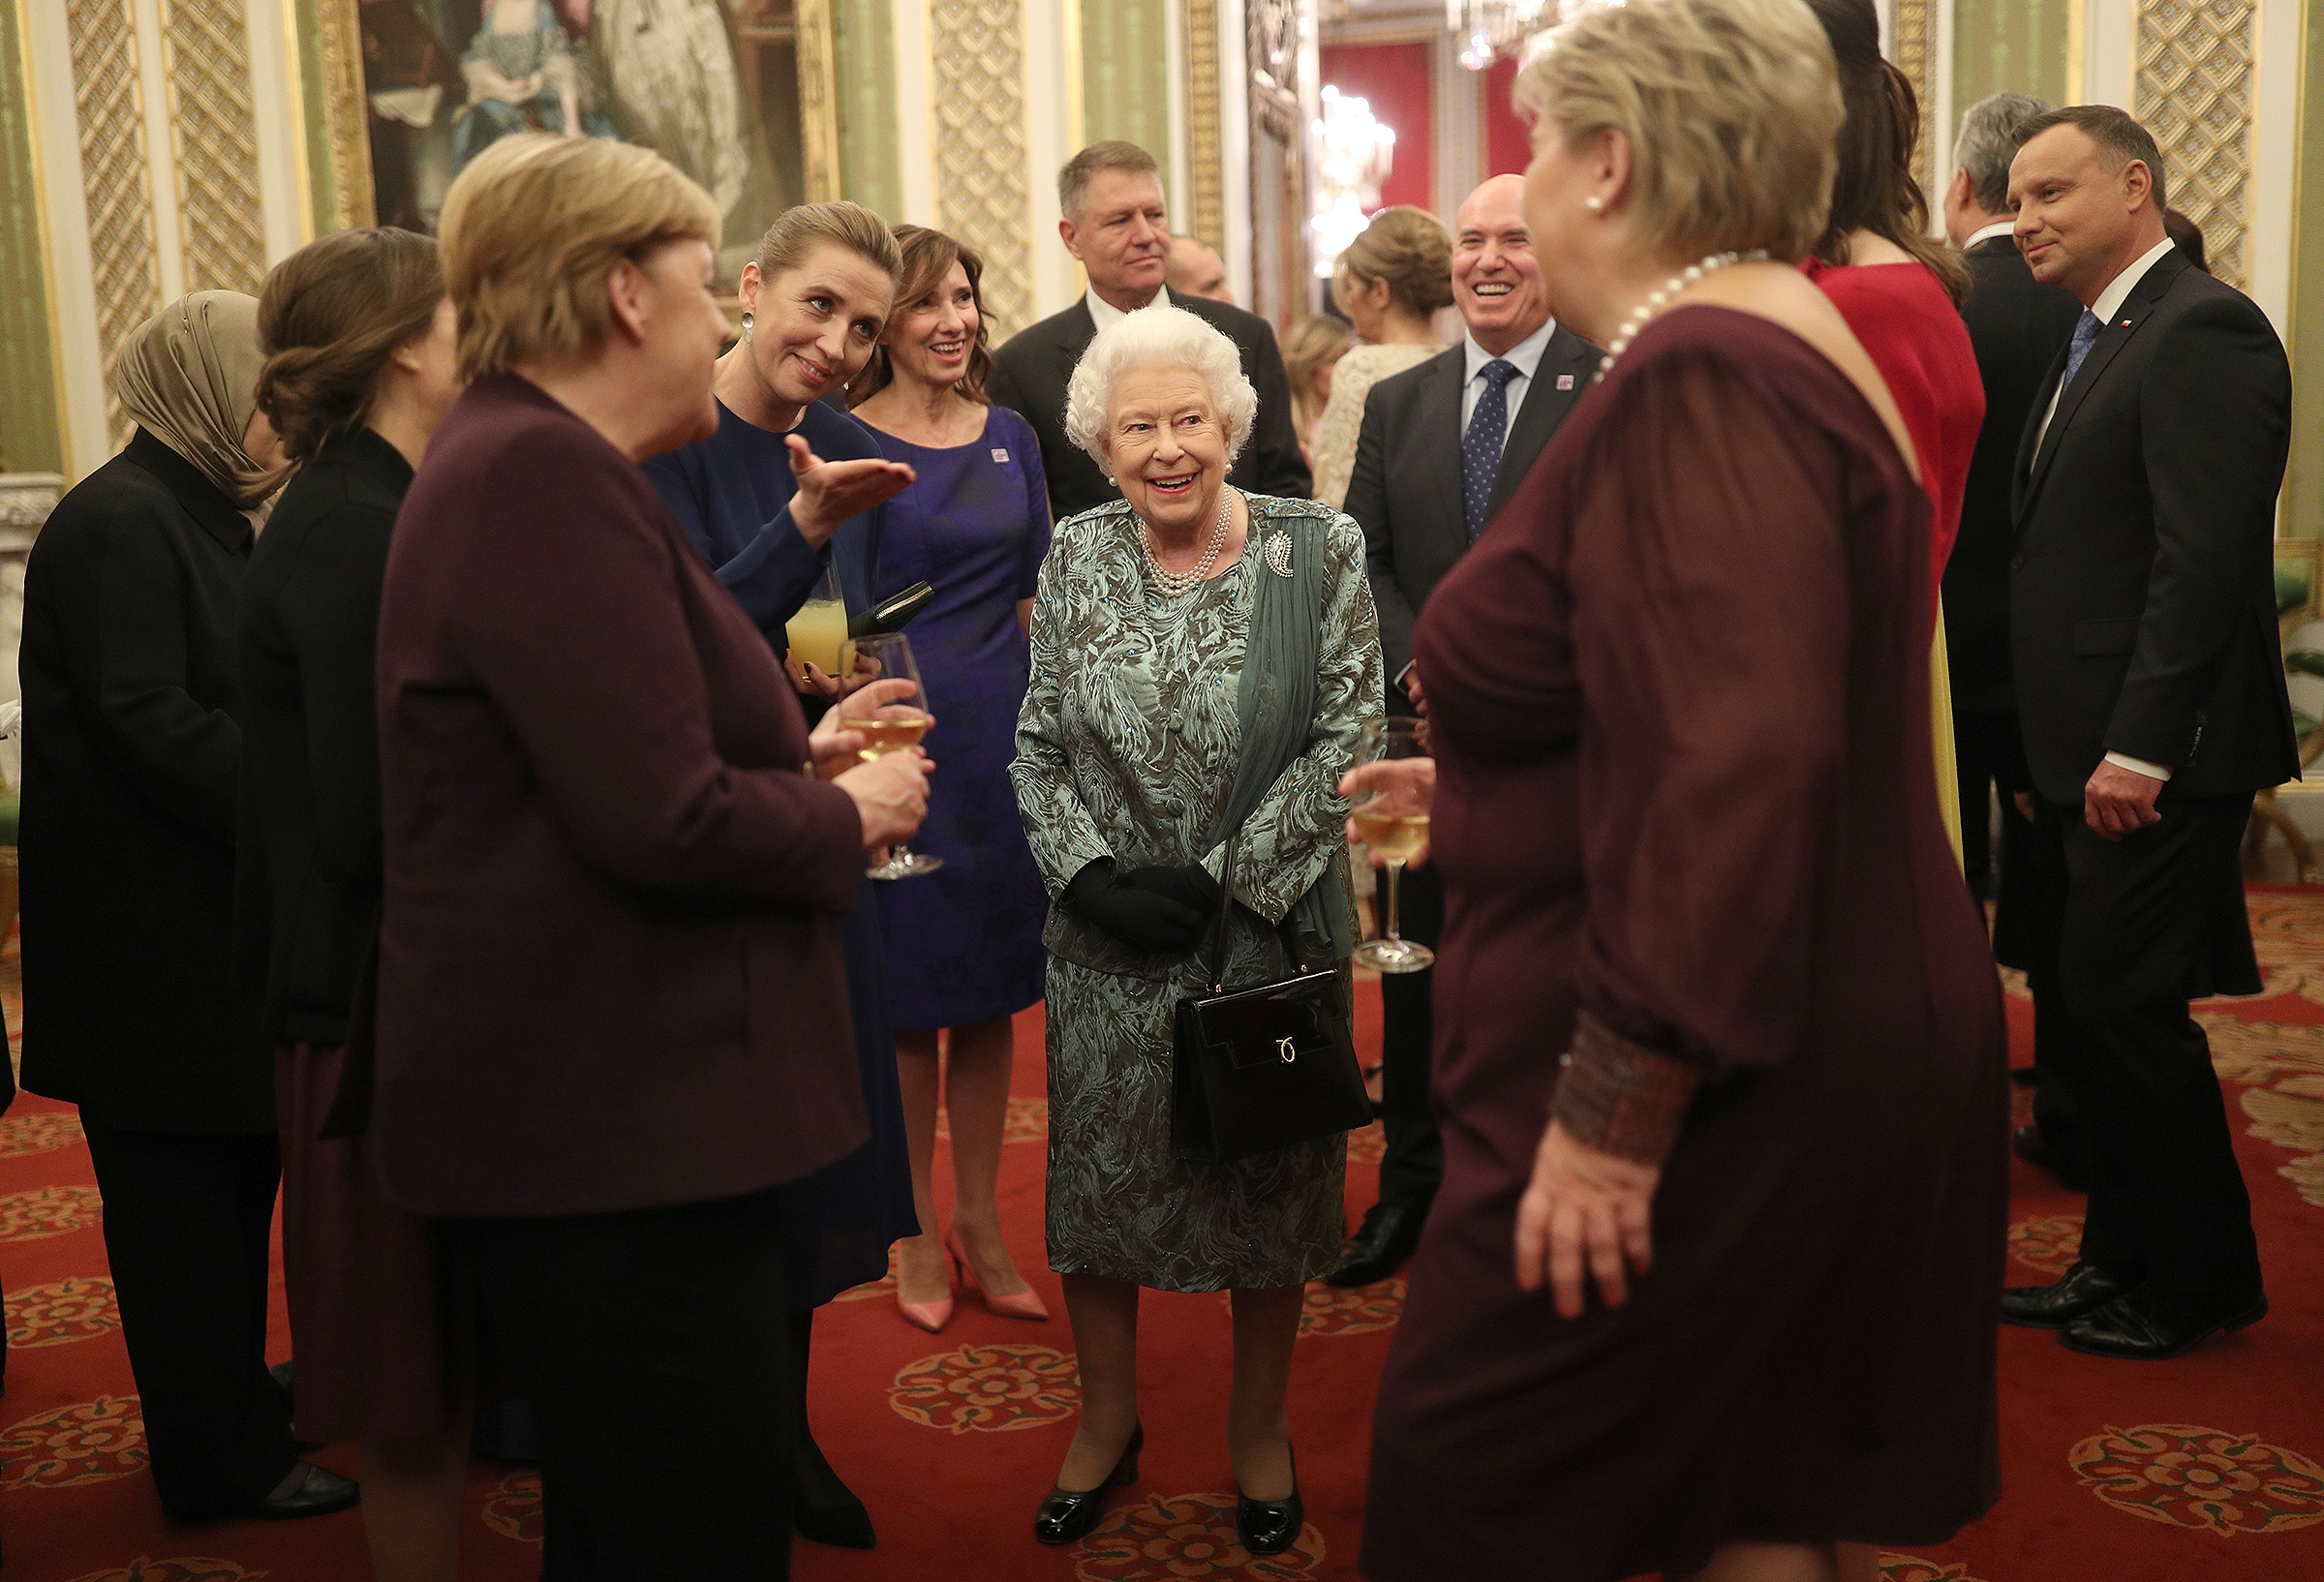 Елизавета II, принц Чарльз, Кейт Миддлтон, Дональд Трамп и другие на торжественном приеме в Букингемском дворце